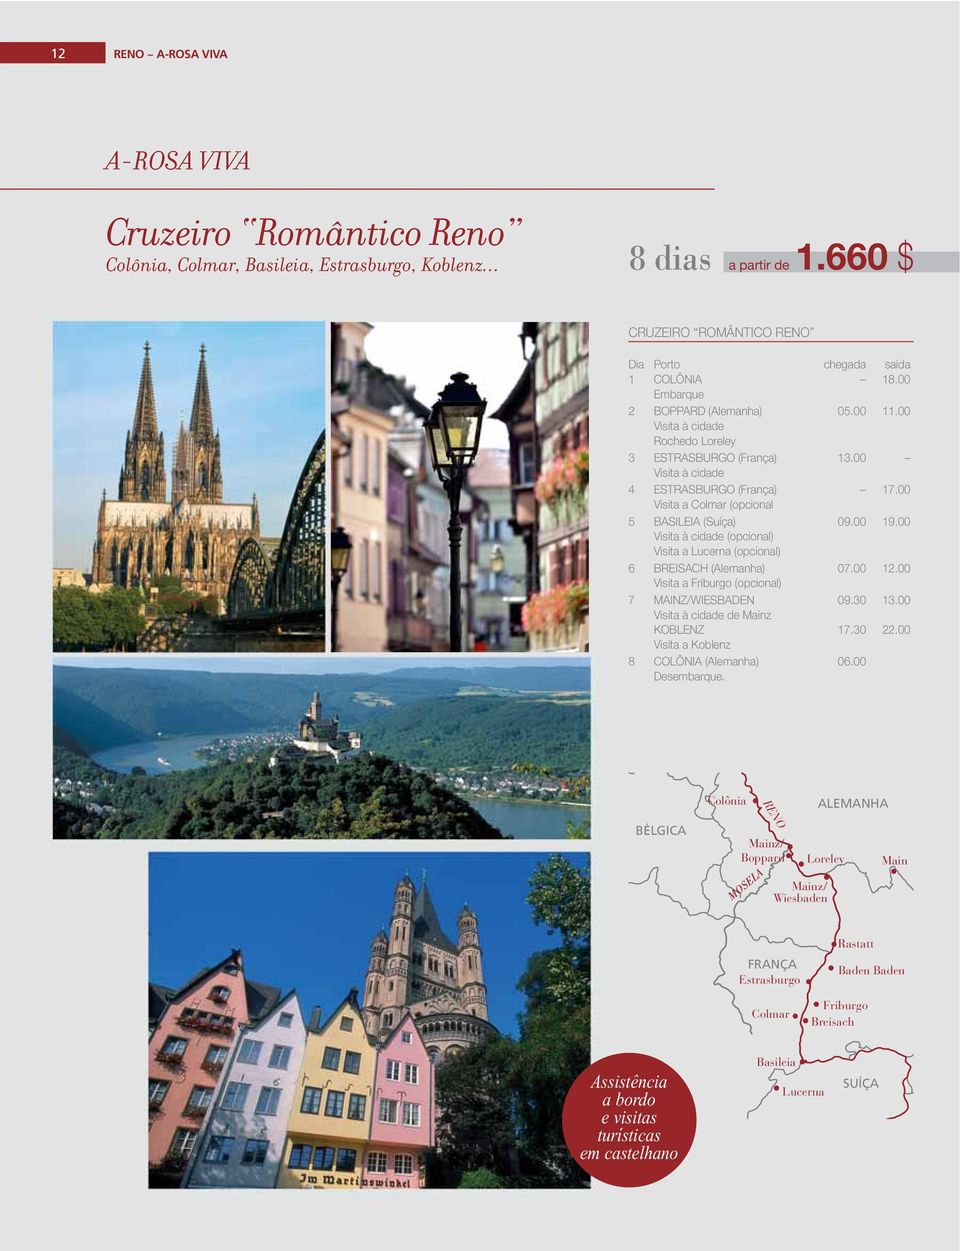 00 19.00 Visita à cidade (opcional) Visita a Lucerna (opcional) 6 BREISACH (Alemanha) 07.00 12.00 Visita a Friburgo (opcional) 7 MAINZ/WIESBADEN 09.30 13.00 Visita à cidade de Mainz KOBLENZ 17.30 22.